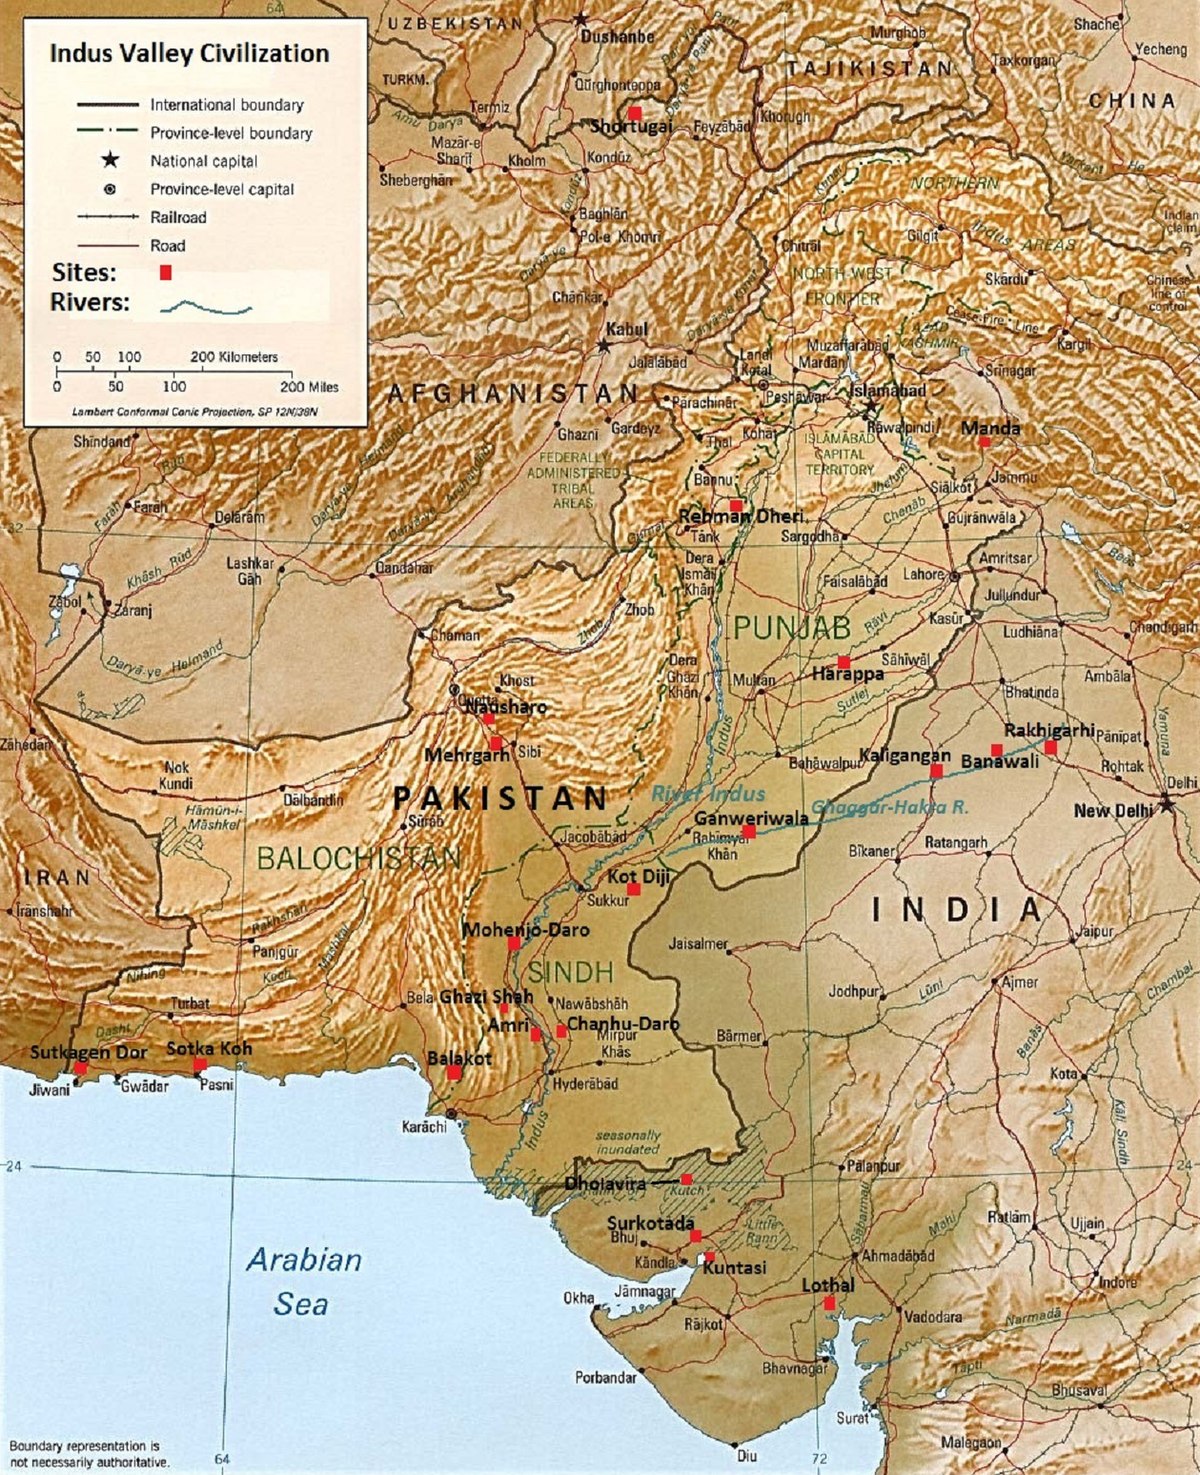 Văn minh lưu vực sông Ấn - Wiki - Du Học Trung Quốc